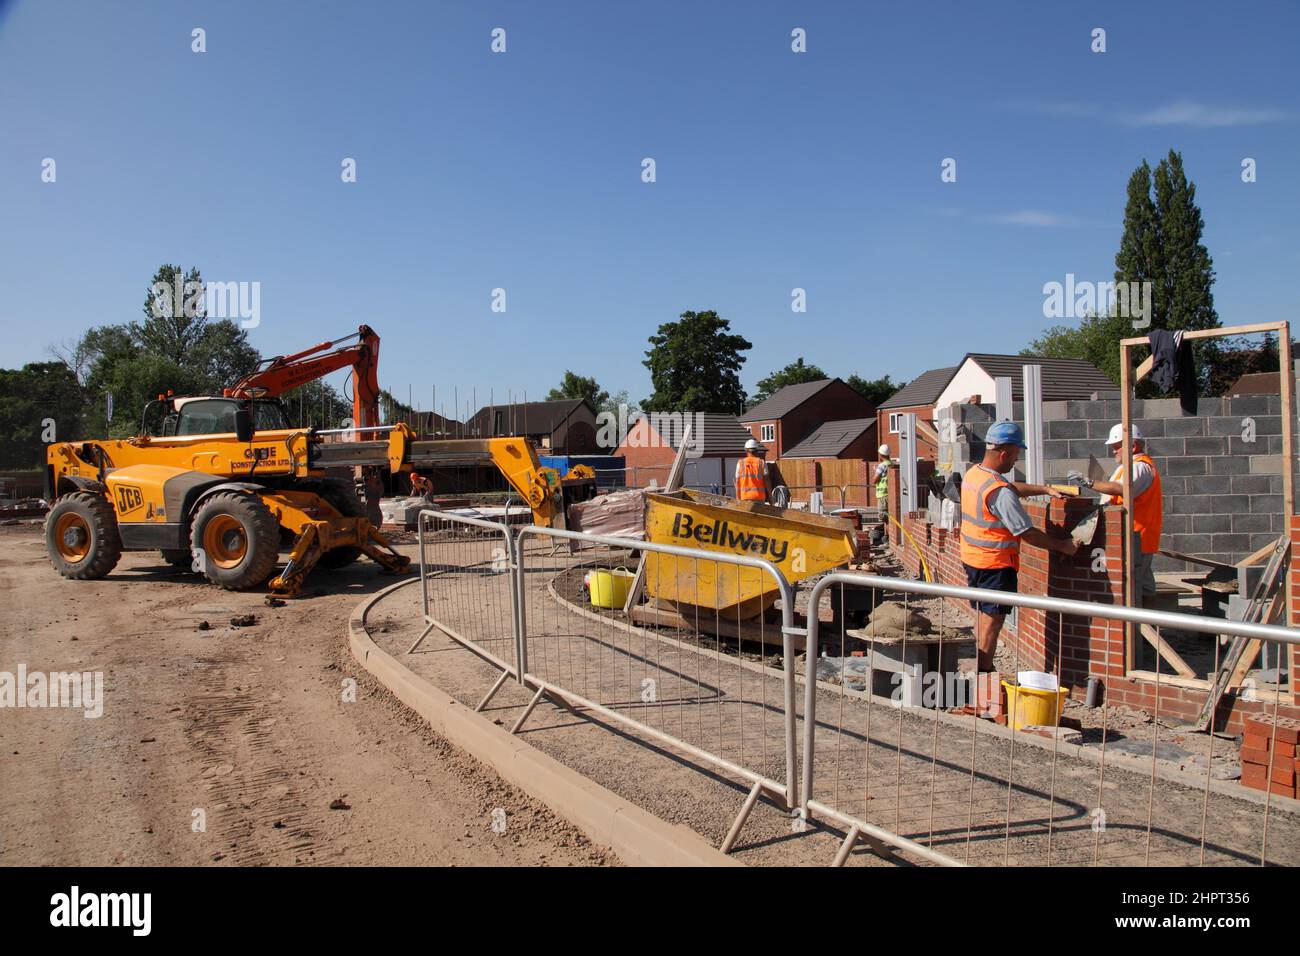 Des constructeurs et des couches de briques travaillent sur un site de construction Bellway Homes dans les West Midlands, en Angleterre, au Royaume-Uni Banque D'Images